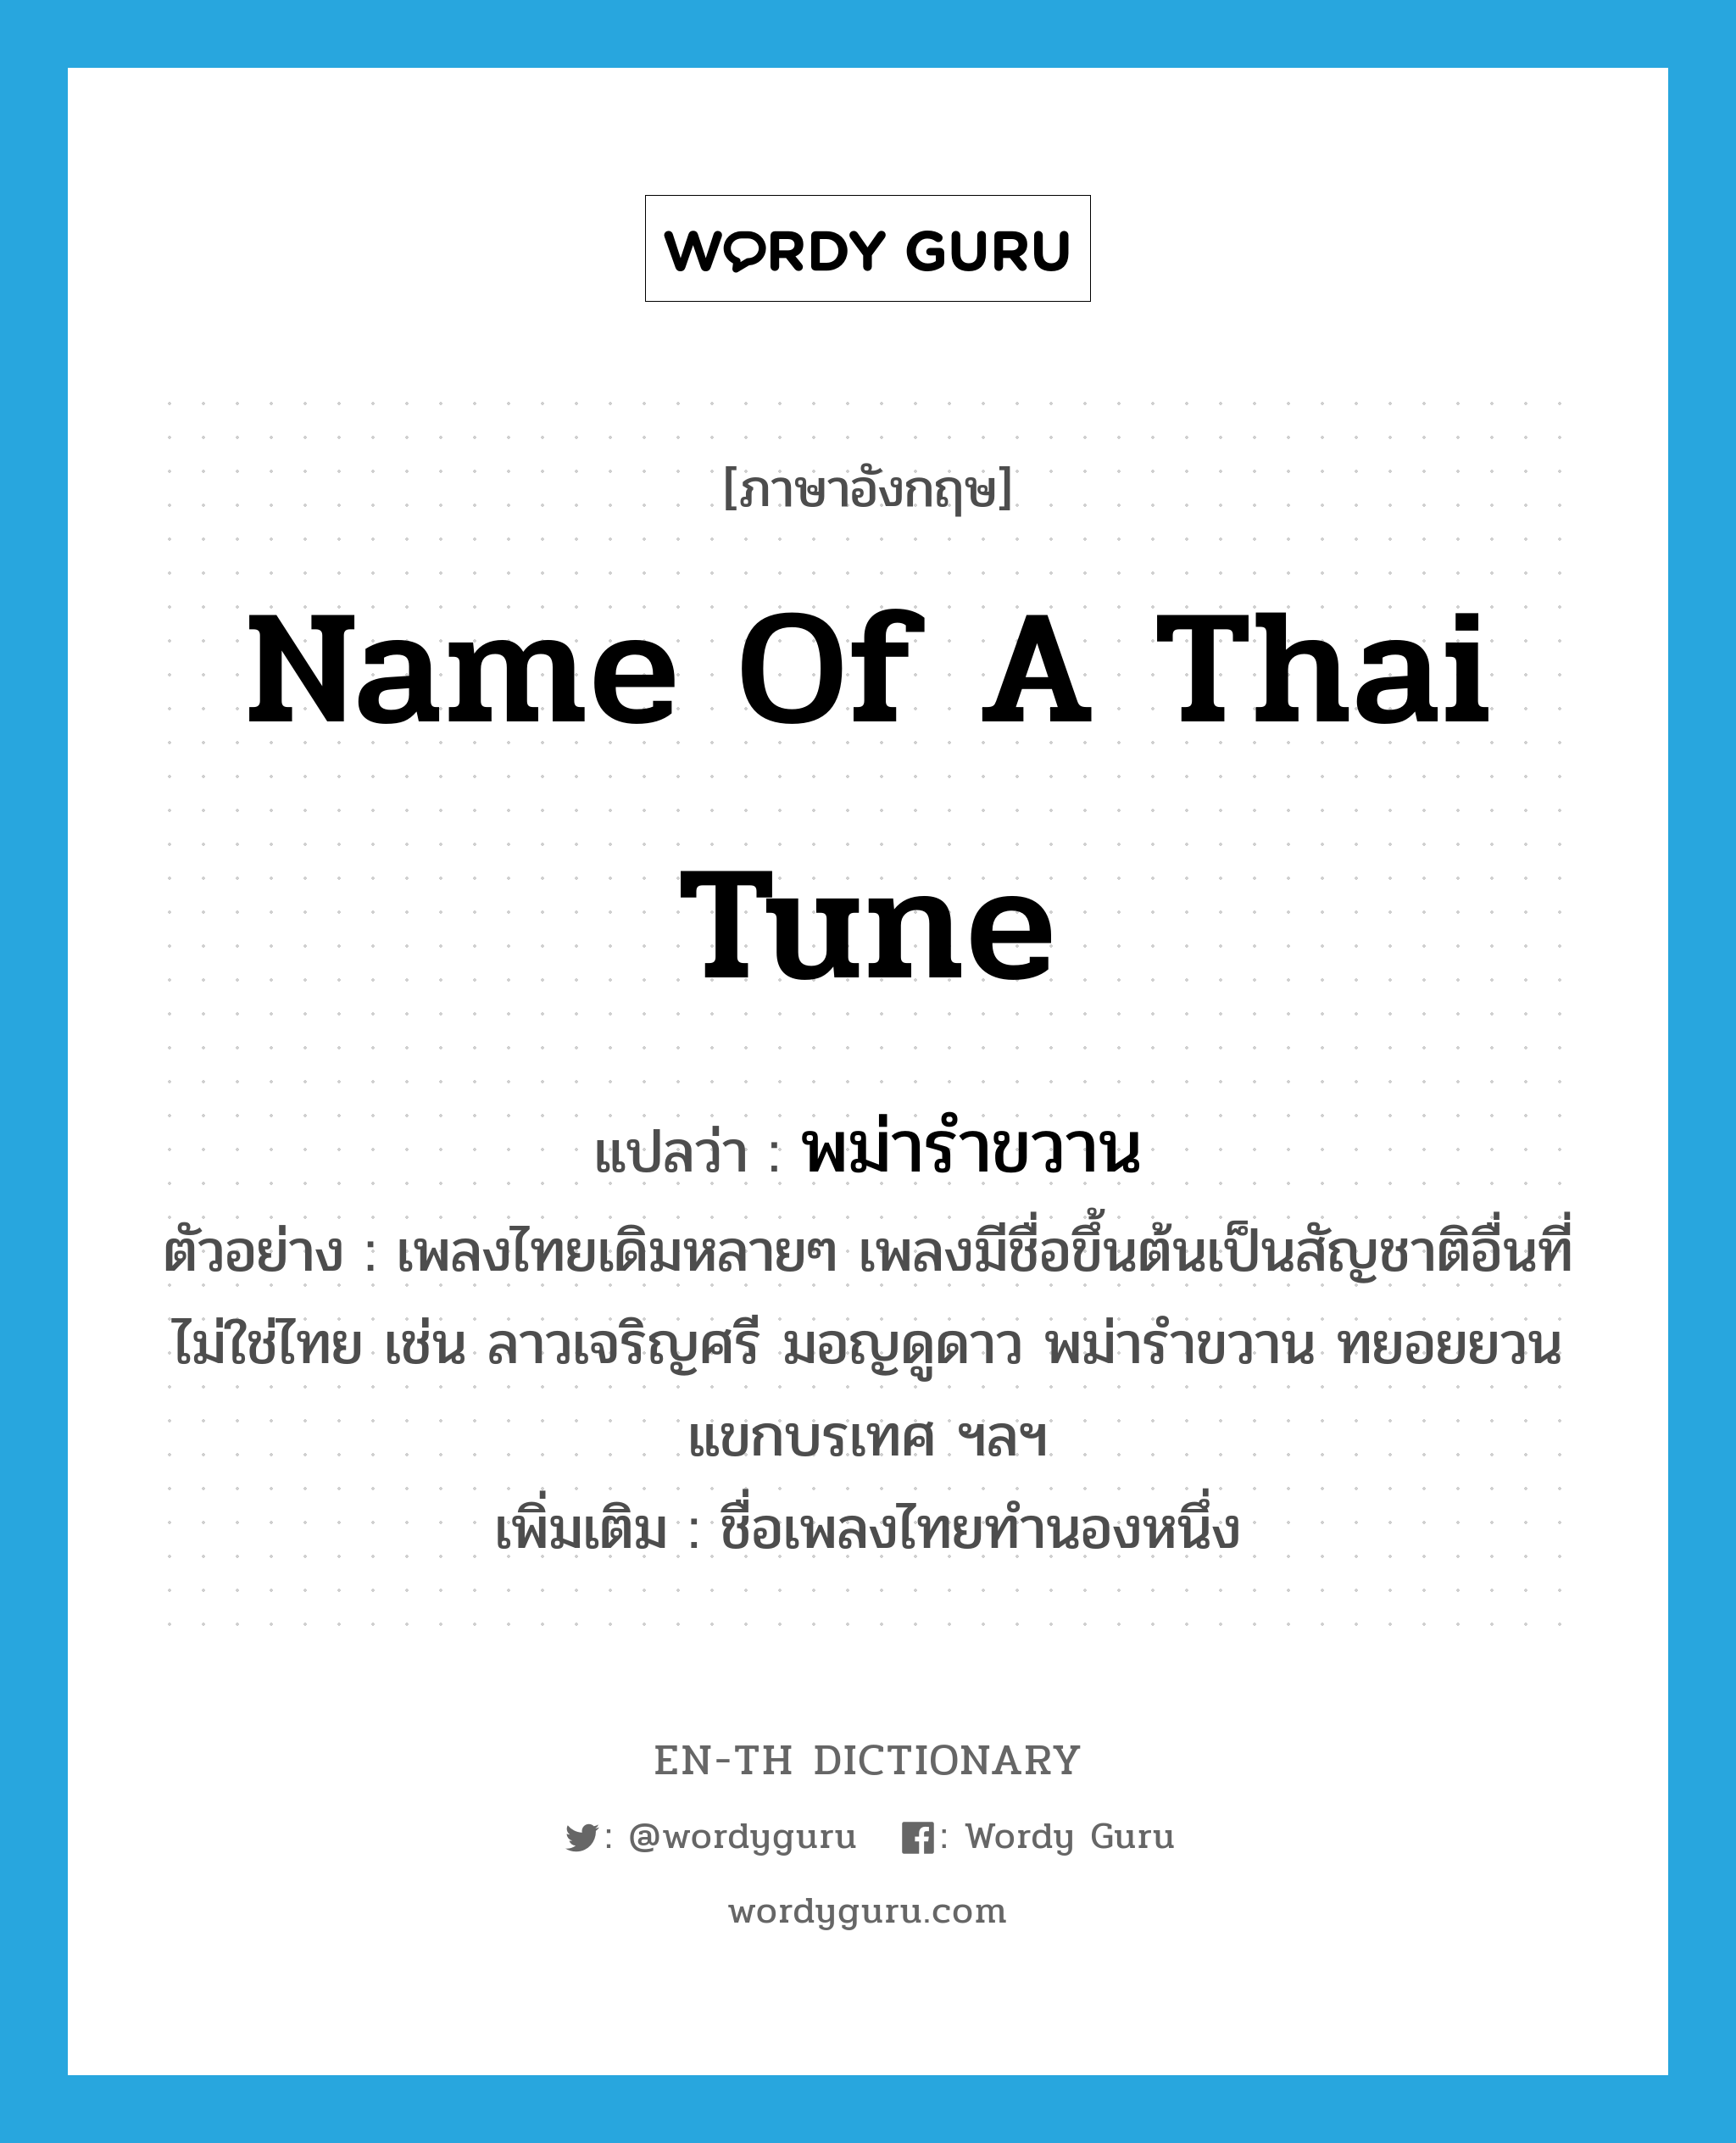 พม่ารำขวาน ภาษาอังกฤษ?, คำศัพท์ภาษาอังกฤษ พม่ารำขวาน แปลว่า name of a Thai tune ประเภท N ตัวอย่าง เพลงไทยเดิมหลายๆ เพลงมีชื่อขึ้นต้นเป็นสัญชาติอื่นที่ไม่ใช่ไทย เช่น ลาวเจริญศรี มอญดูดาว พม่ารำขวาน ทยอยยวน แขกบรเทศ ฯลฯ เพิ่มเติม ชื่อเพลงไทยทำนองหนึ่ง หมวด N